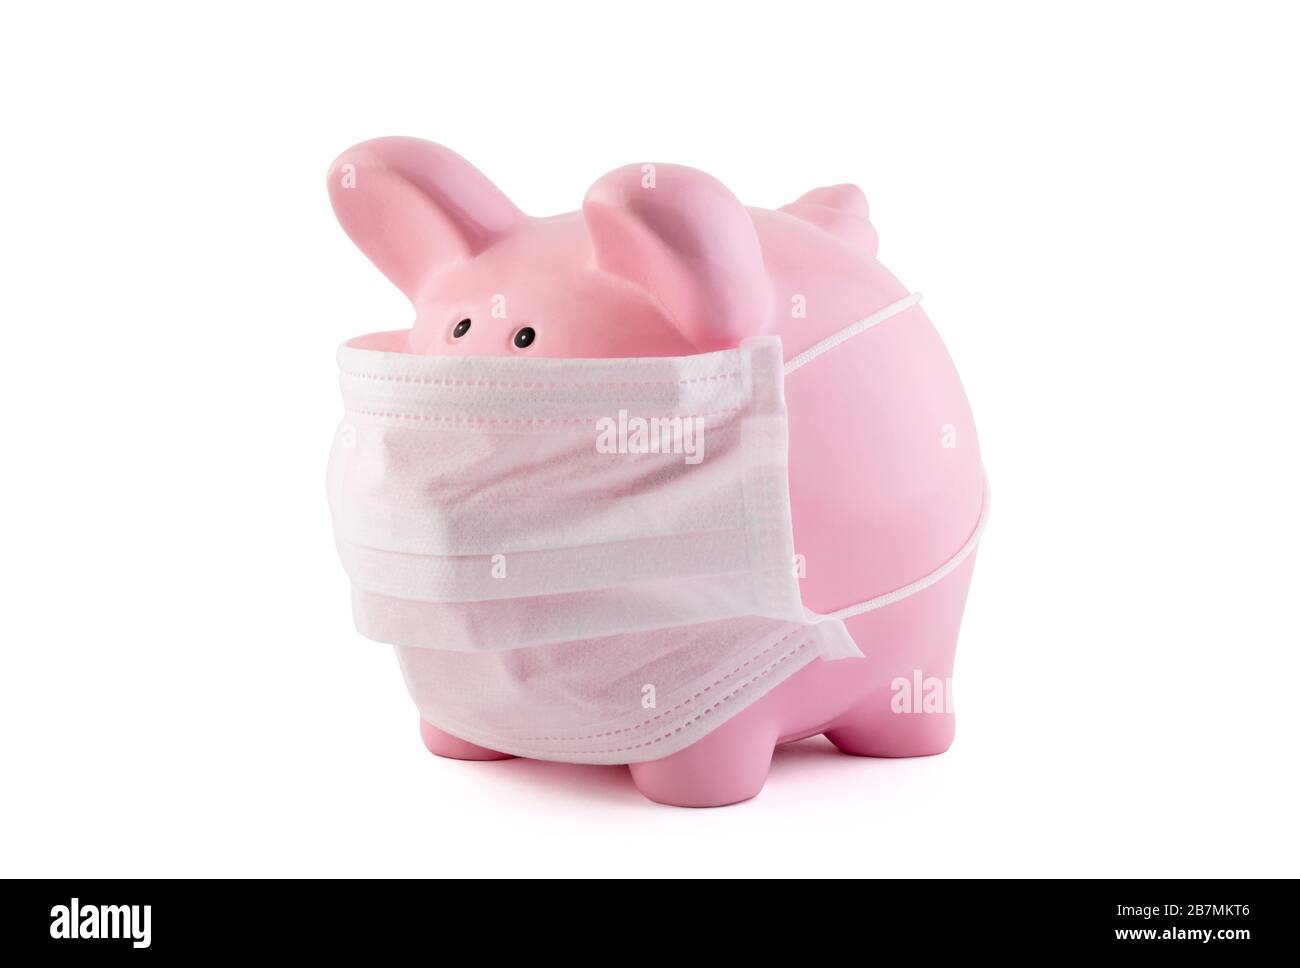 Pinkfarbene Piggy-Bank mit medizinischer Schutzmaske isoliert auf weiß mit Clipping-Pfad. Bankgeschäfte während eines Pandemiekonzepts. Stockfoto